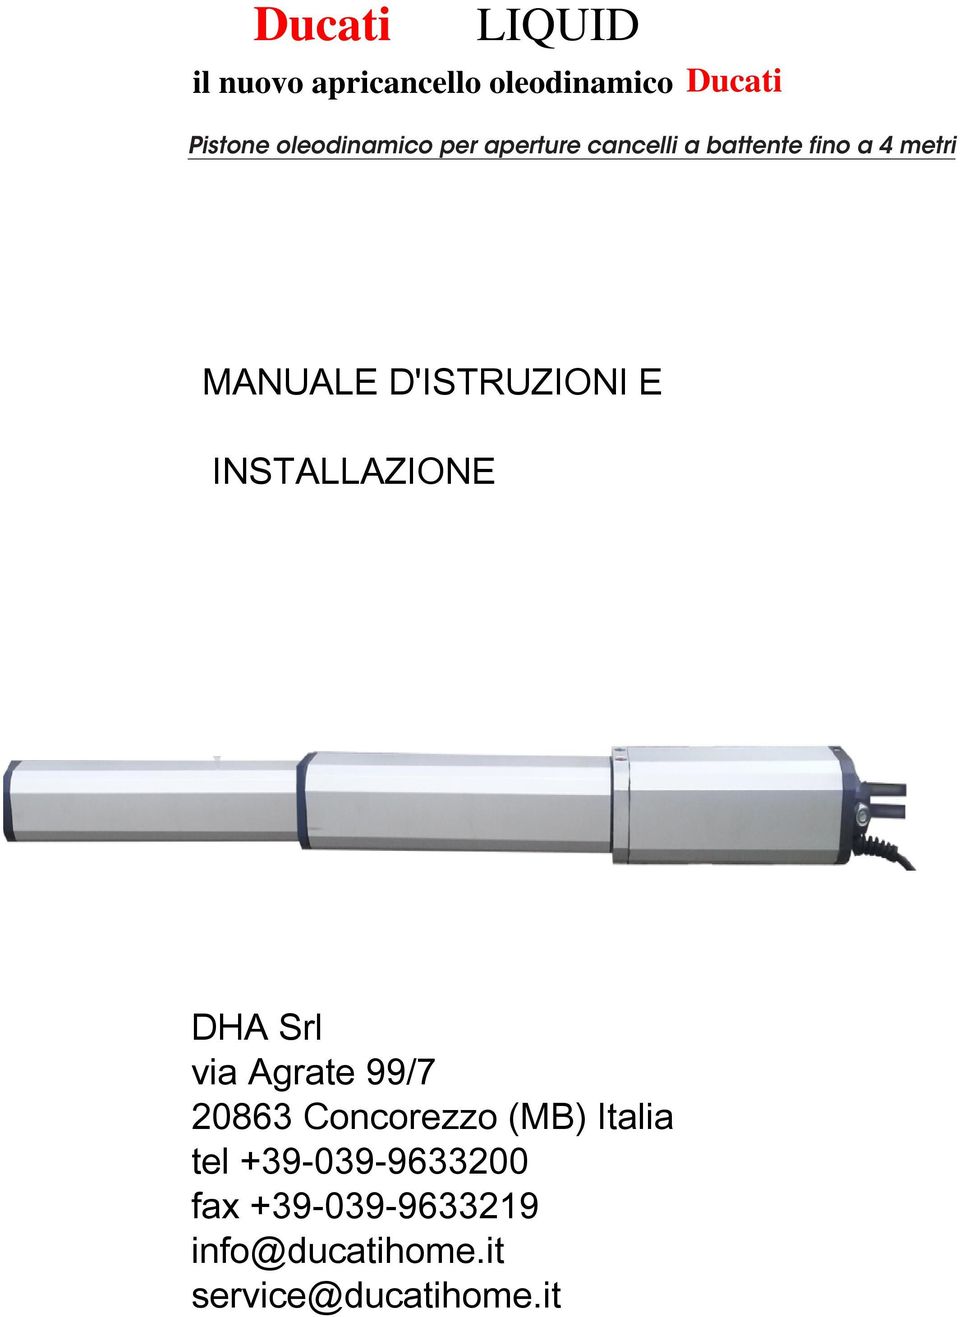 1- DHA Srl via Agrate 99/7 I 2083 Concorezzo (MB) Italia tel +39-039-933200 fax +39-039-933219 info@ducatihome.it service@ducatihome.